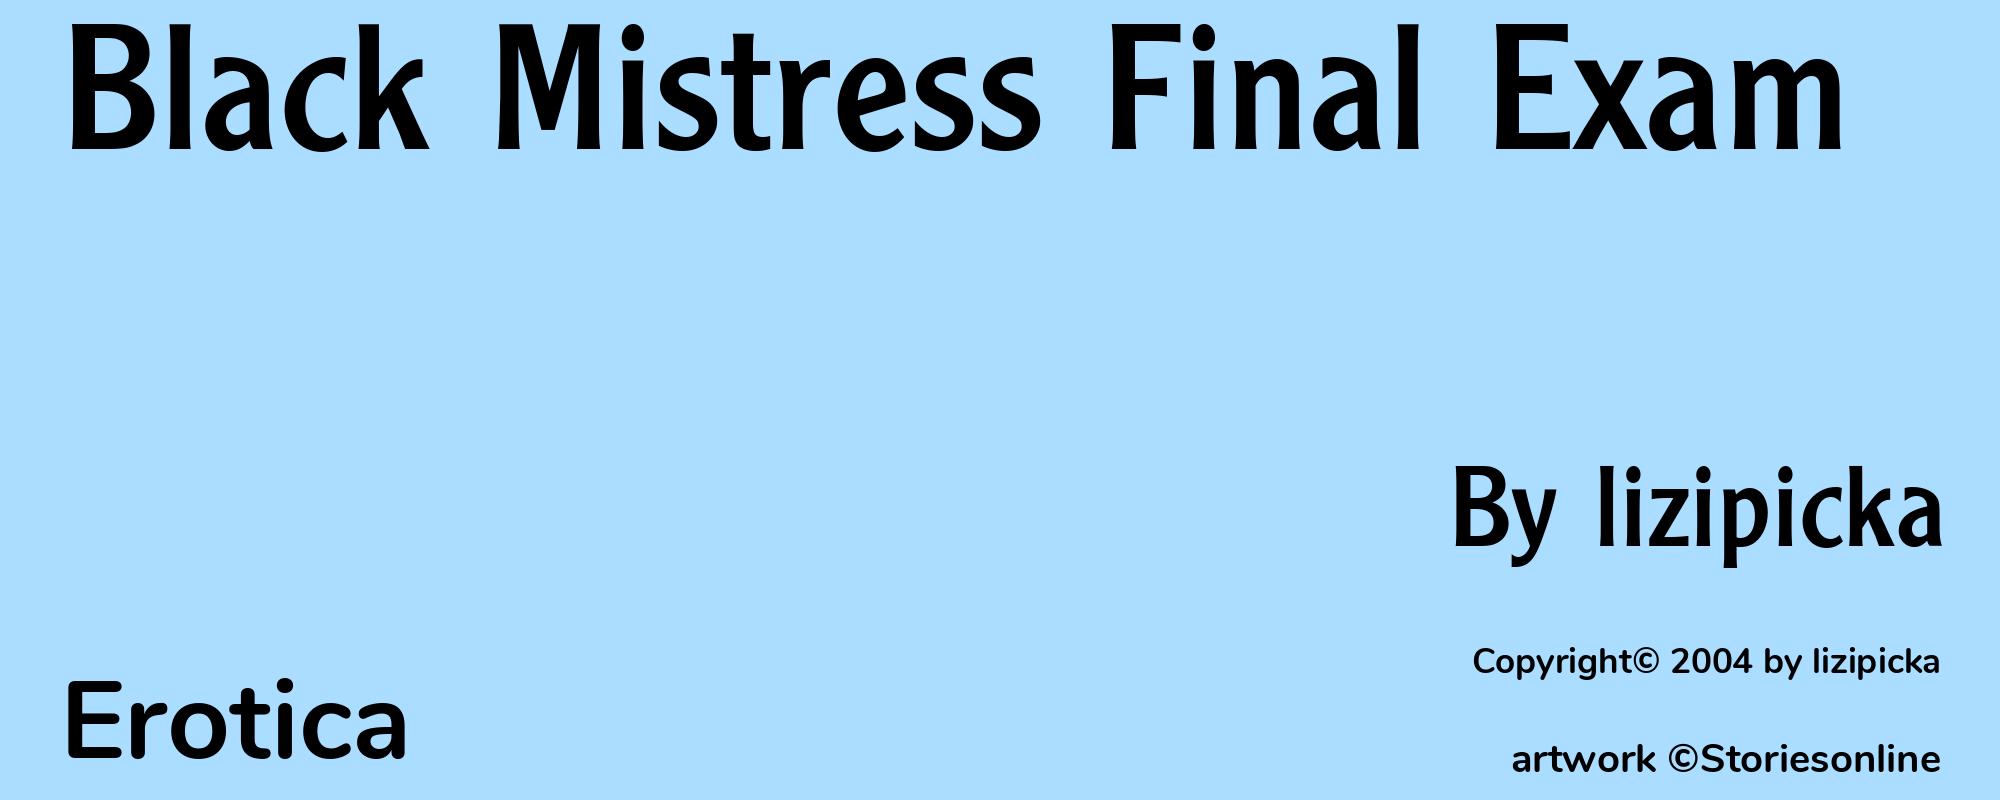 Black Mistress Final Exam - Cover